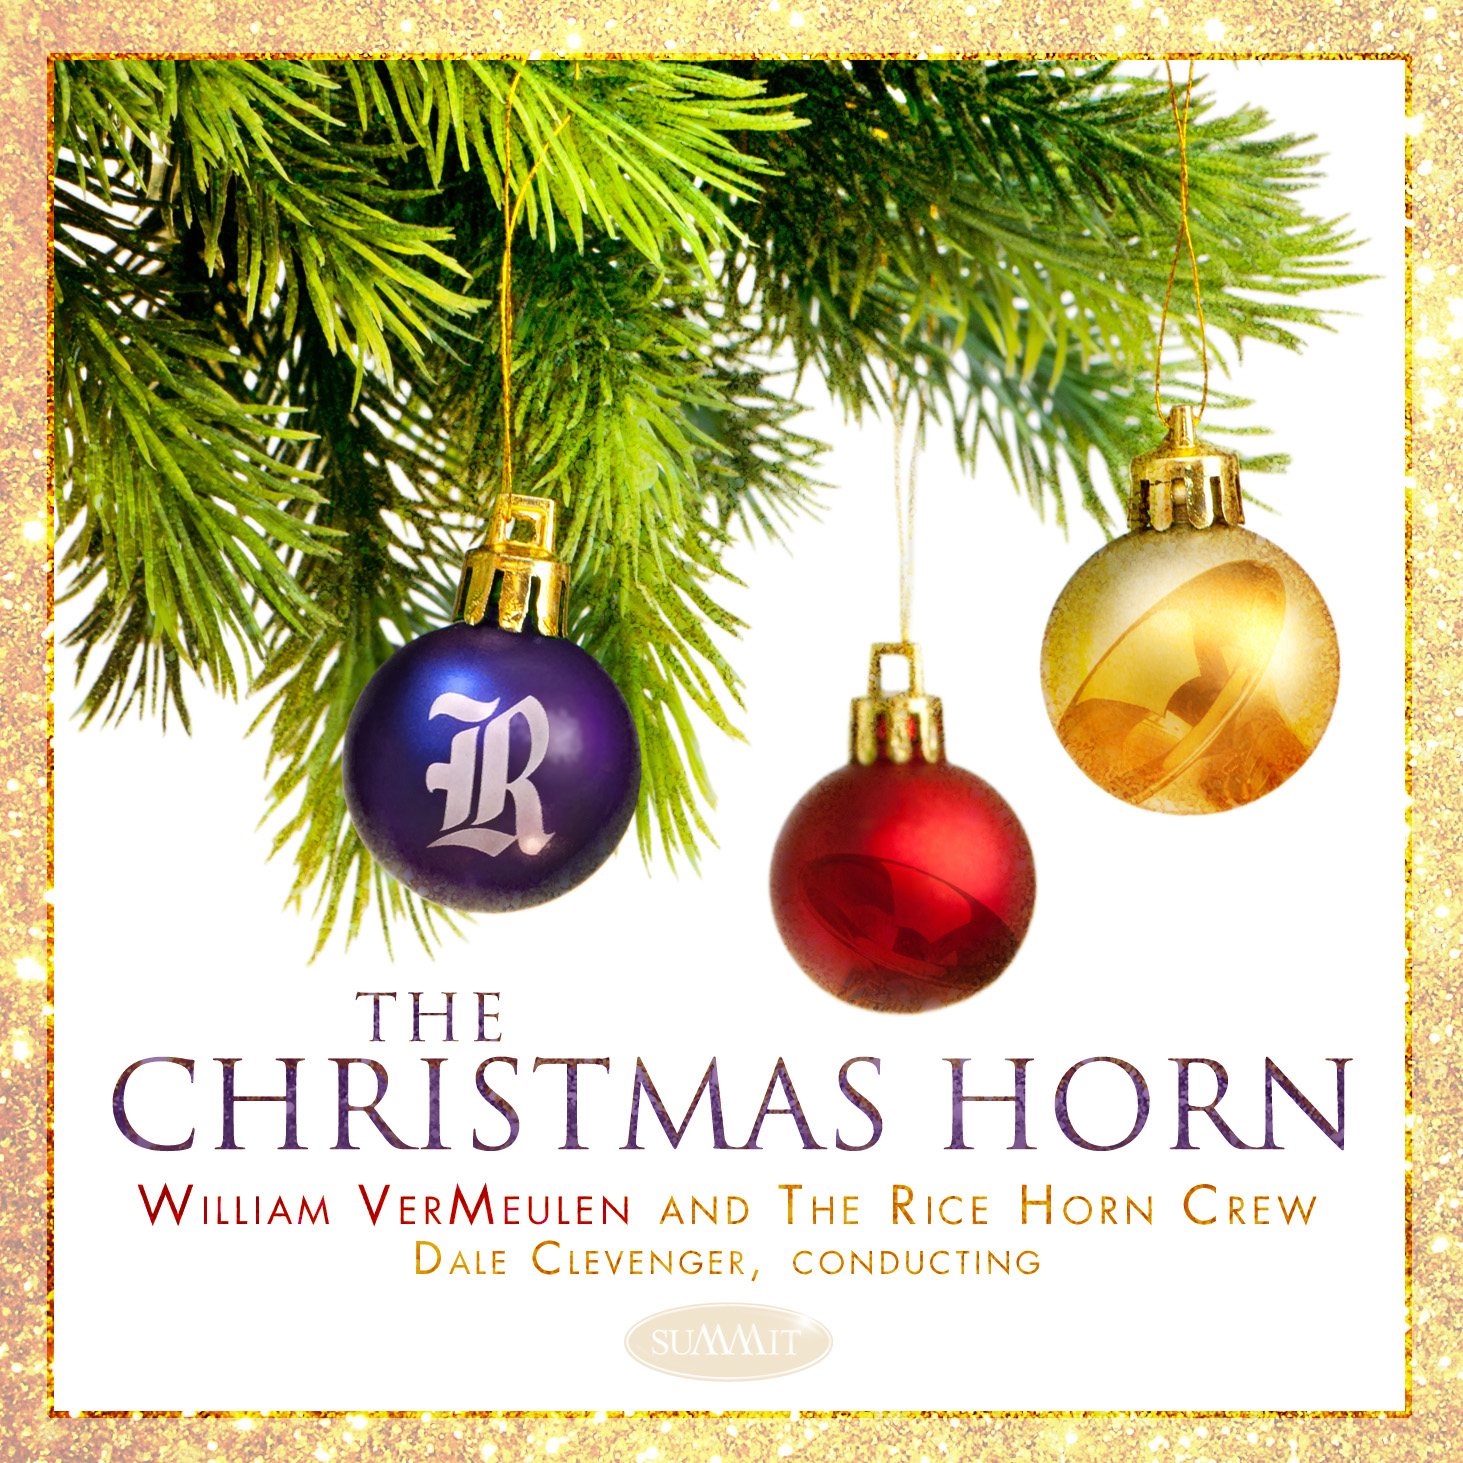 Cover art for The Christmas Horn album